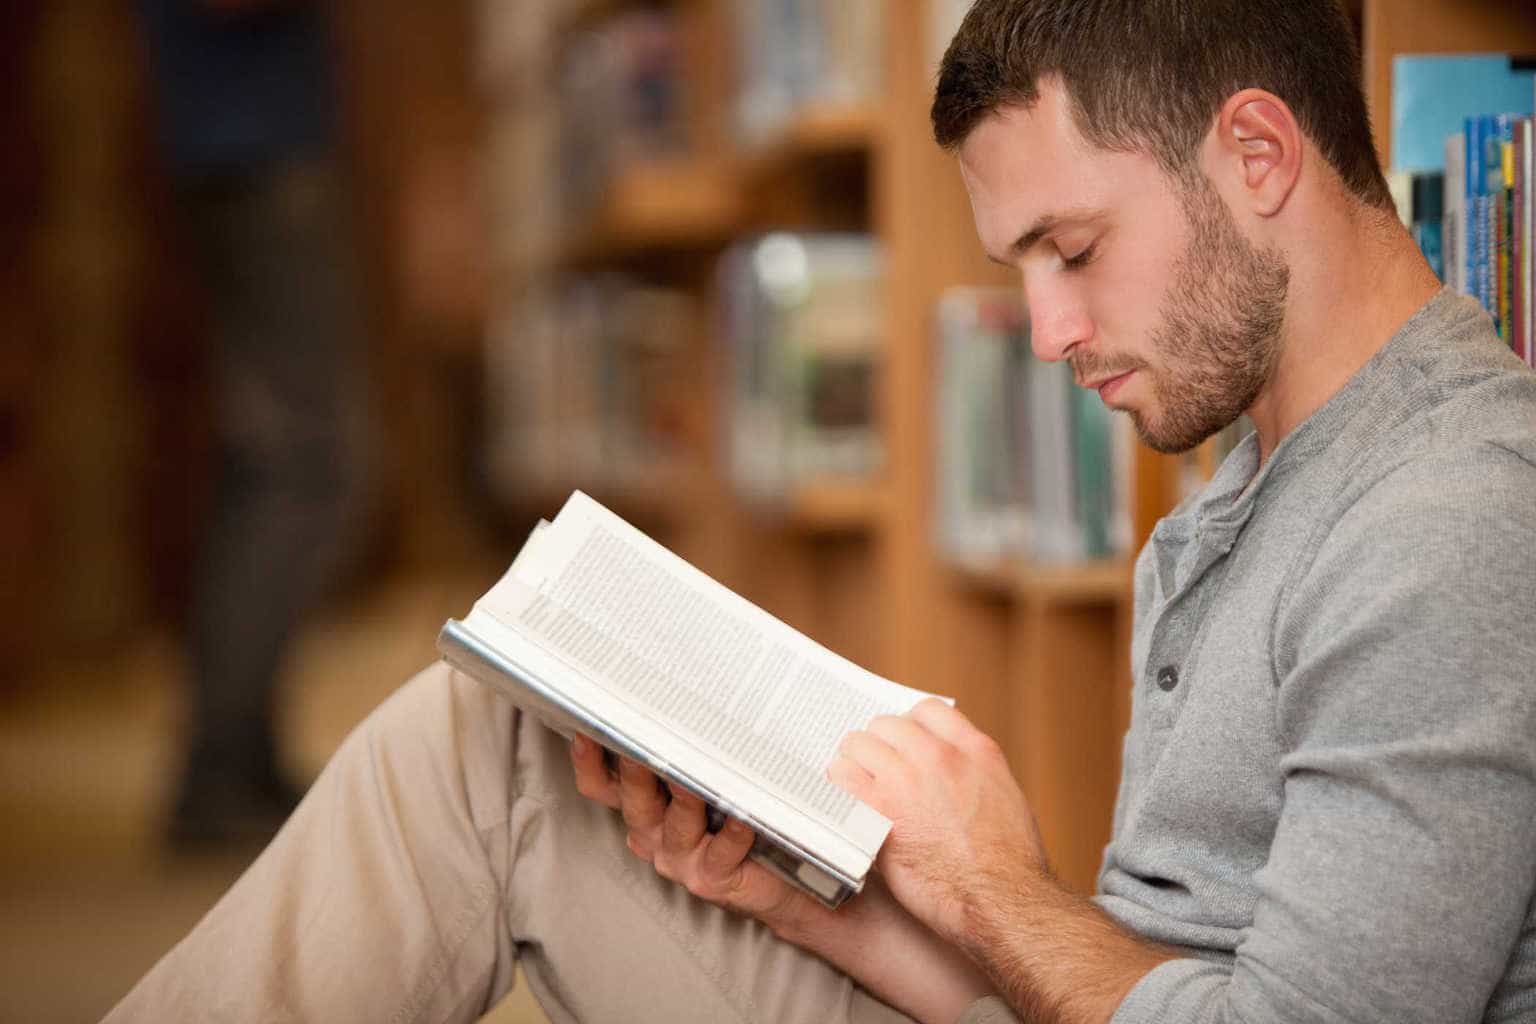 Le persone a cui piace leggere libri vivono una vita più felice